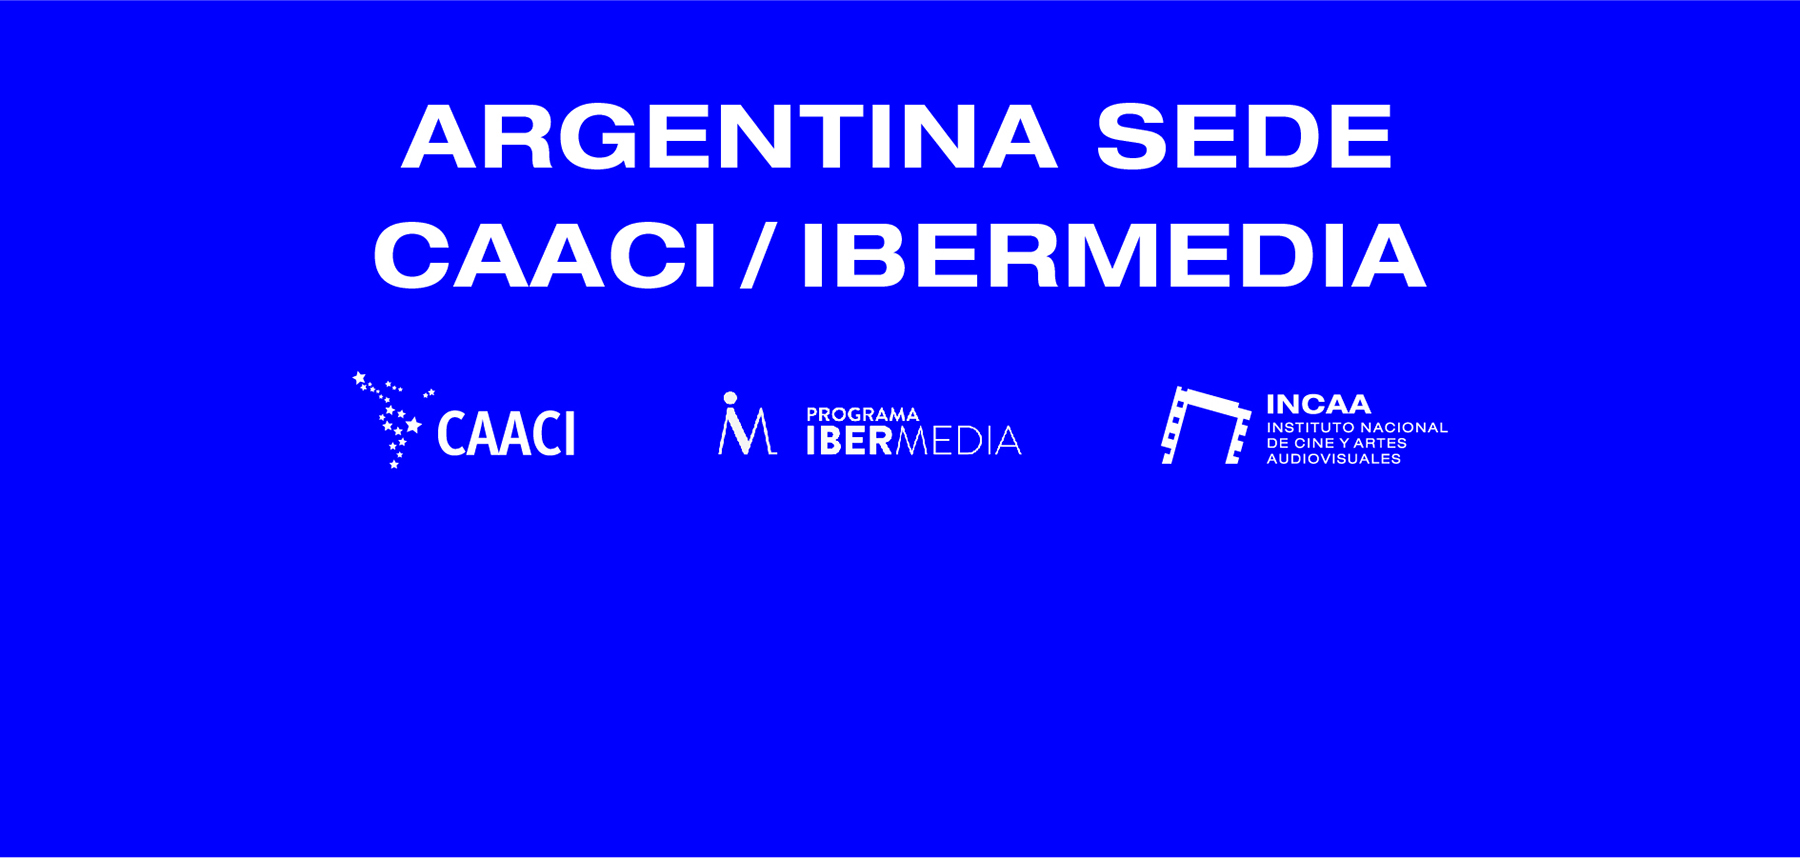 Argentina sede de CAACI/IBERMEDIA